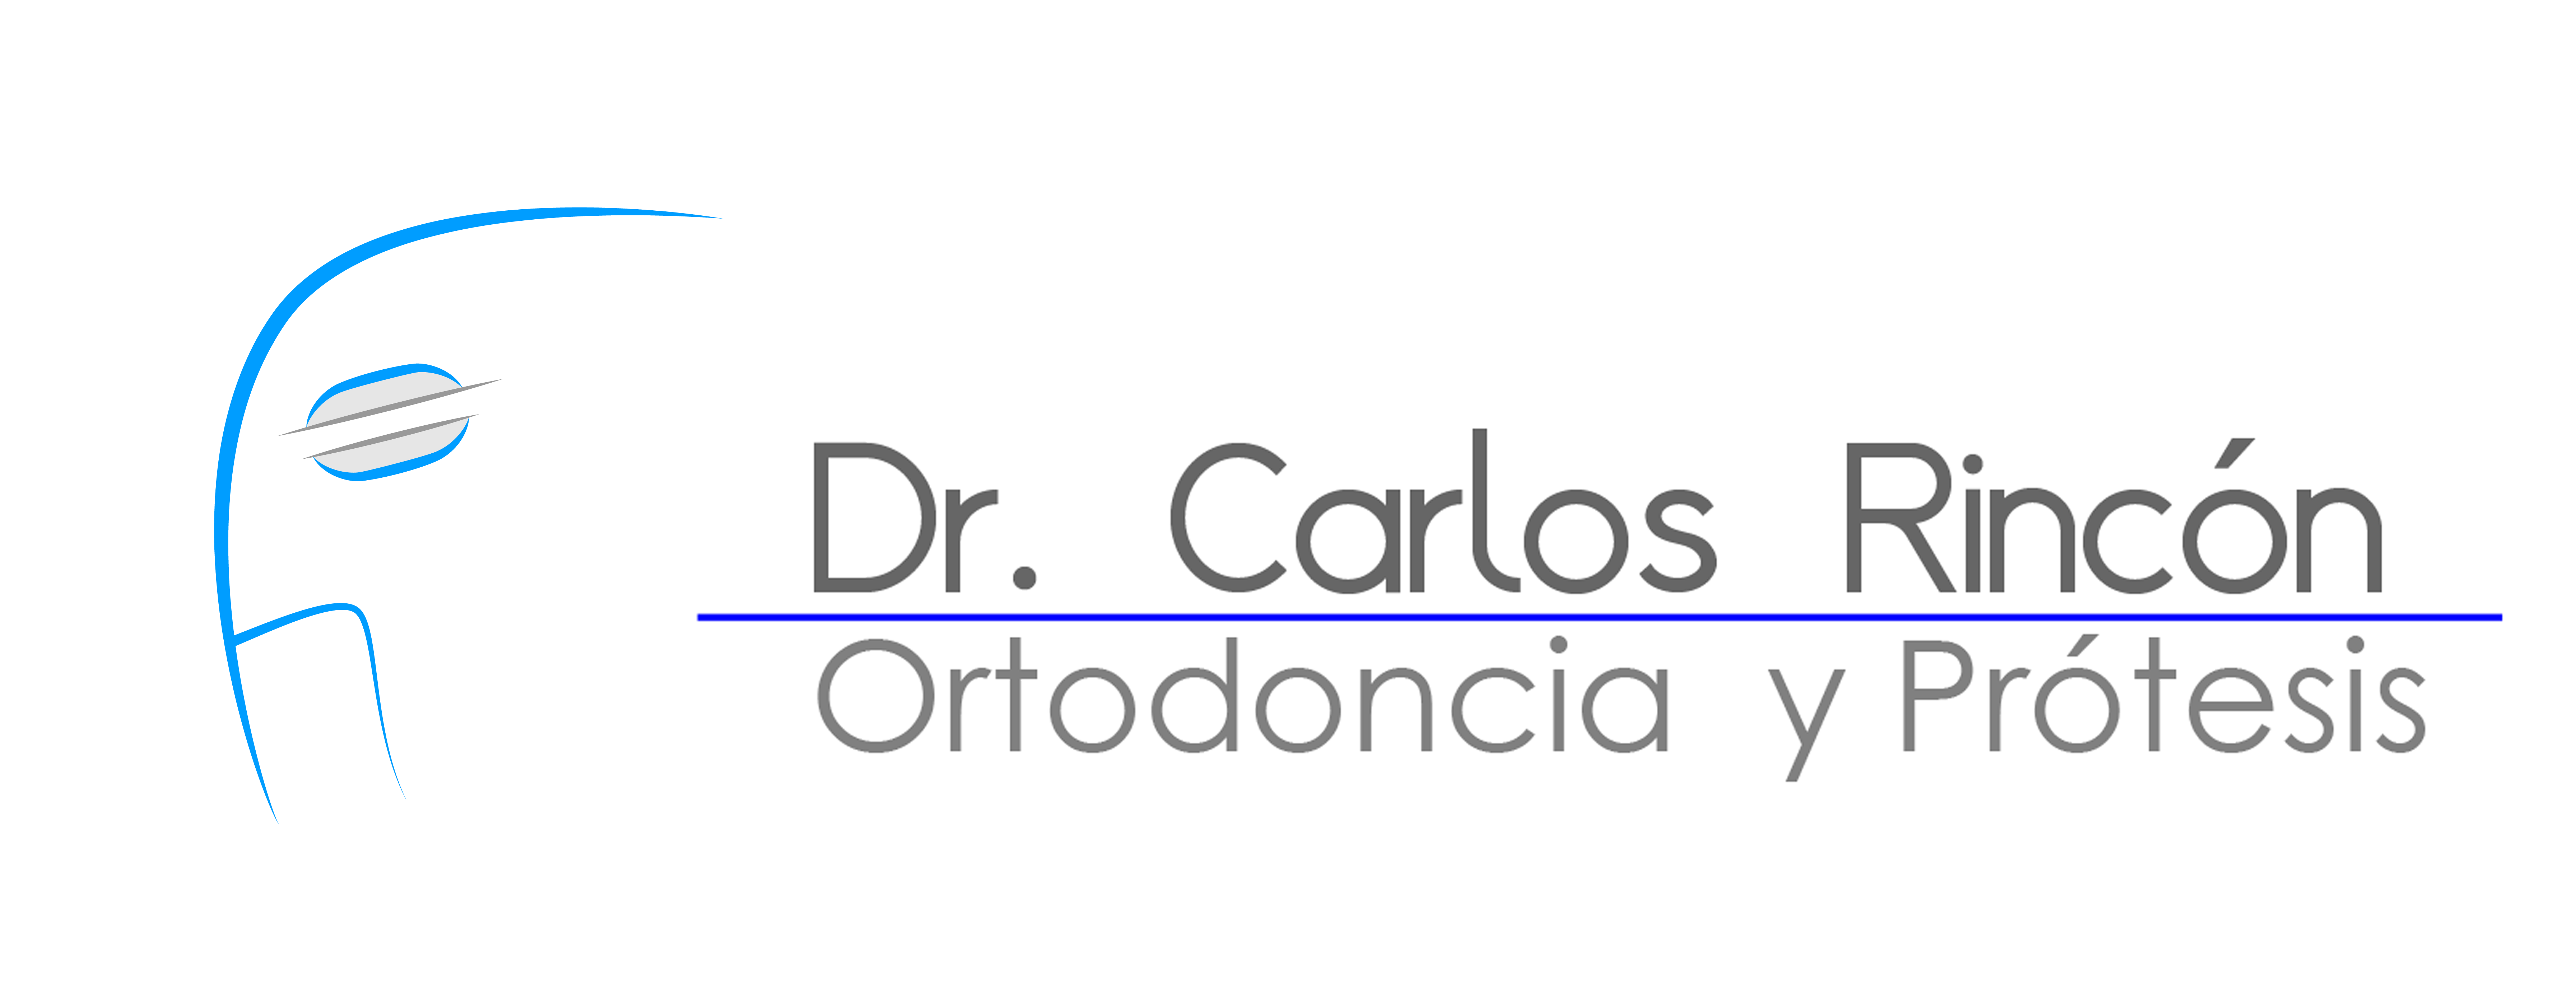 Ortodoncia y Protesis